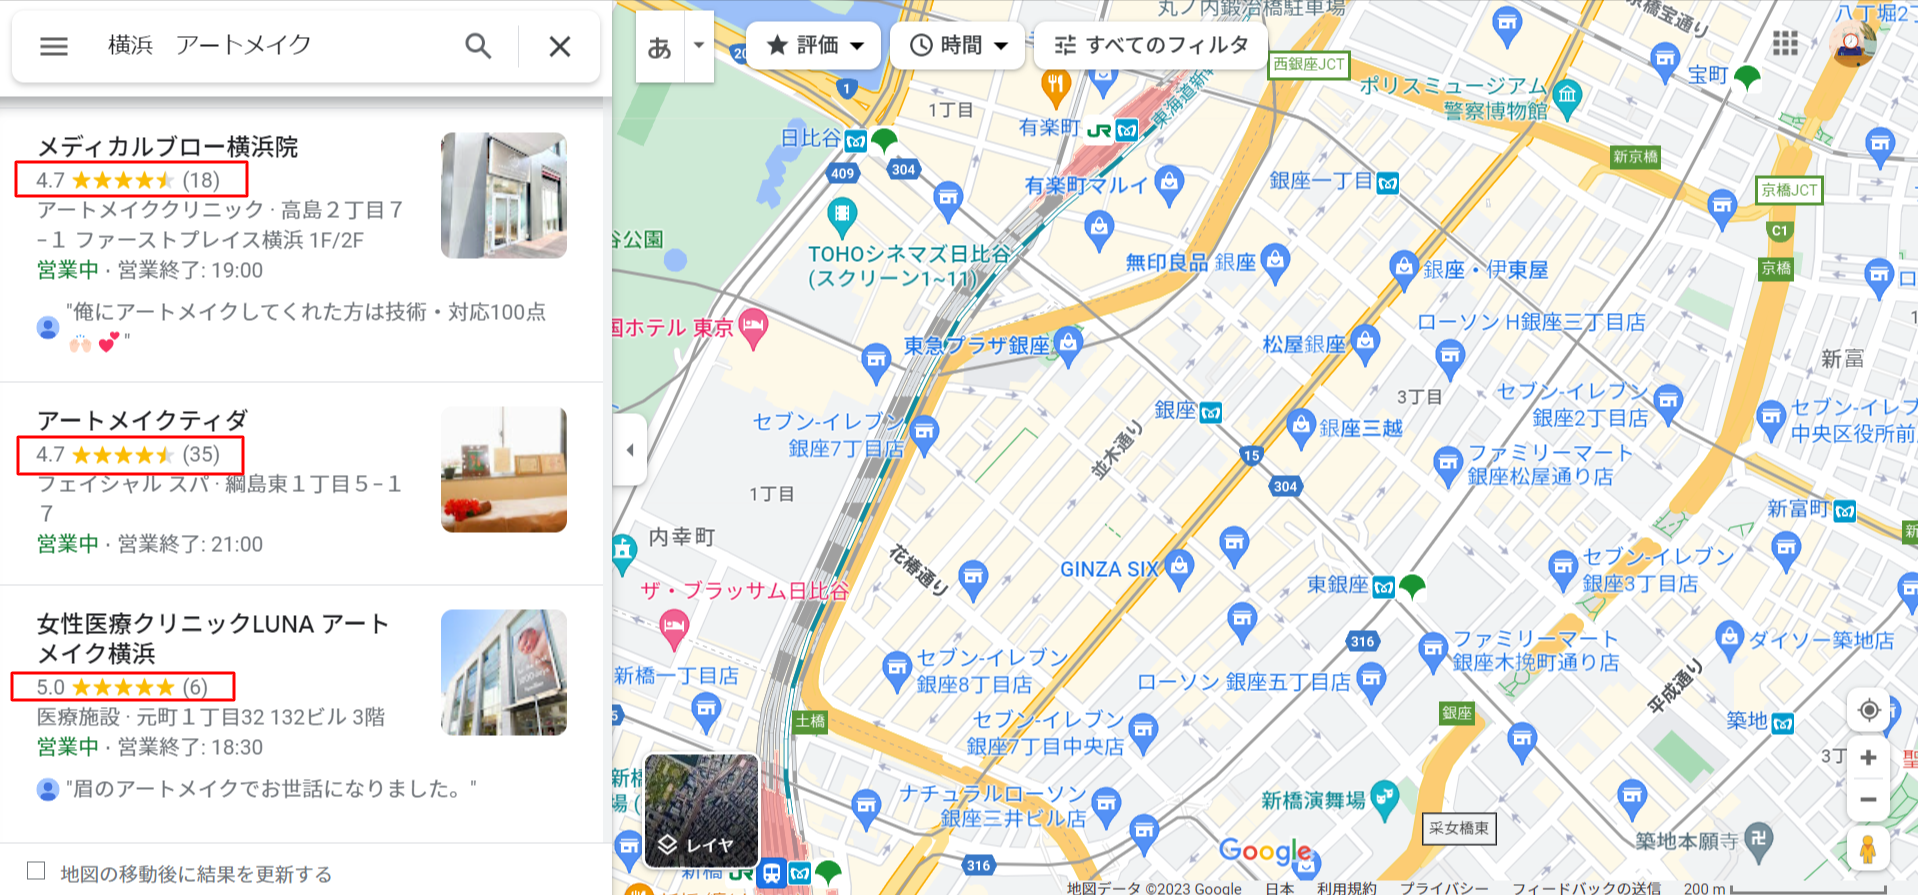 横浜-アートメイク-Google-マップ